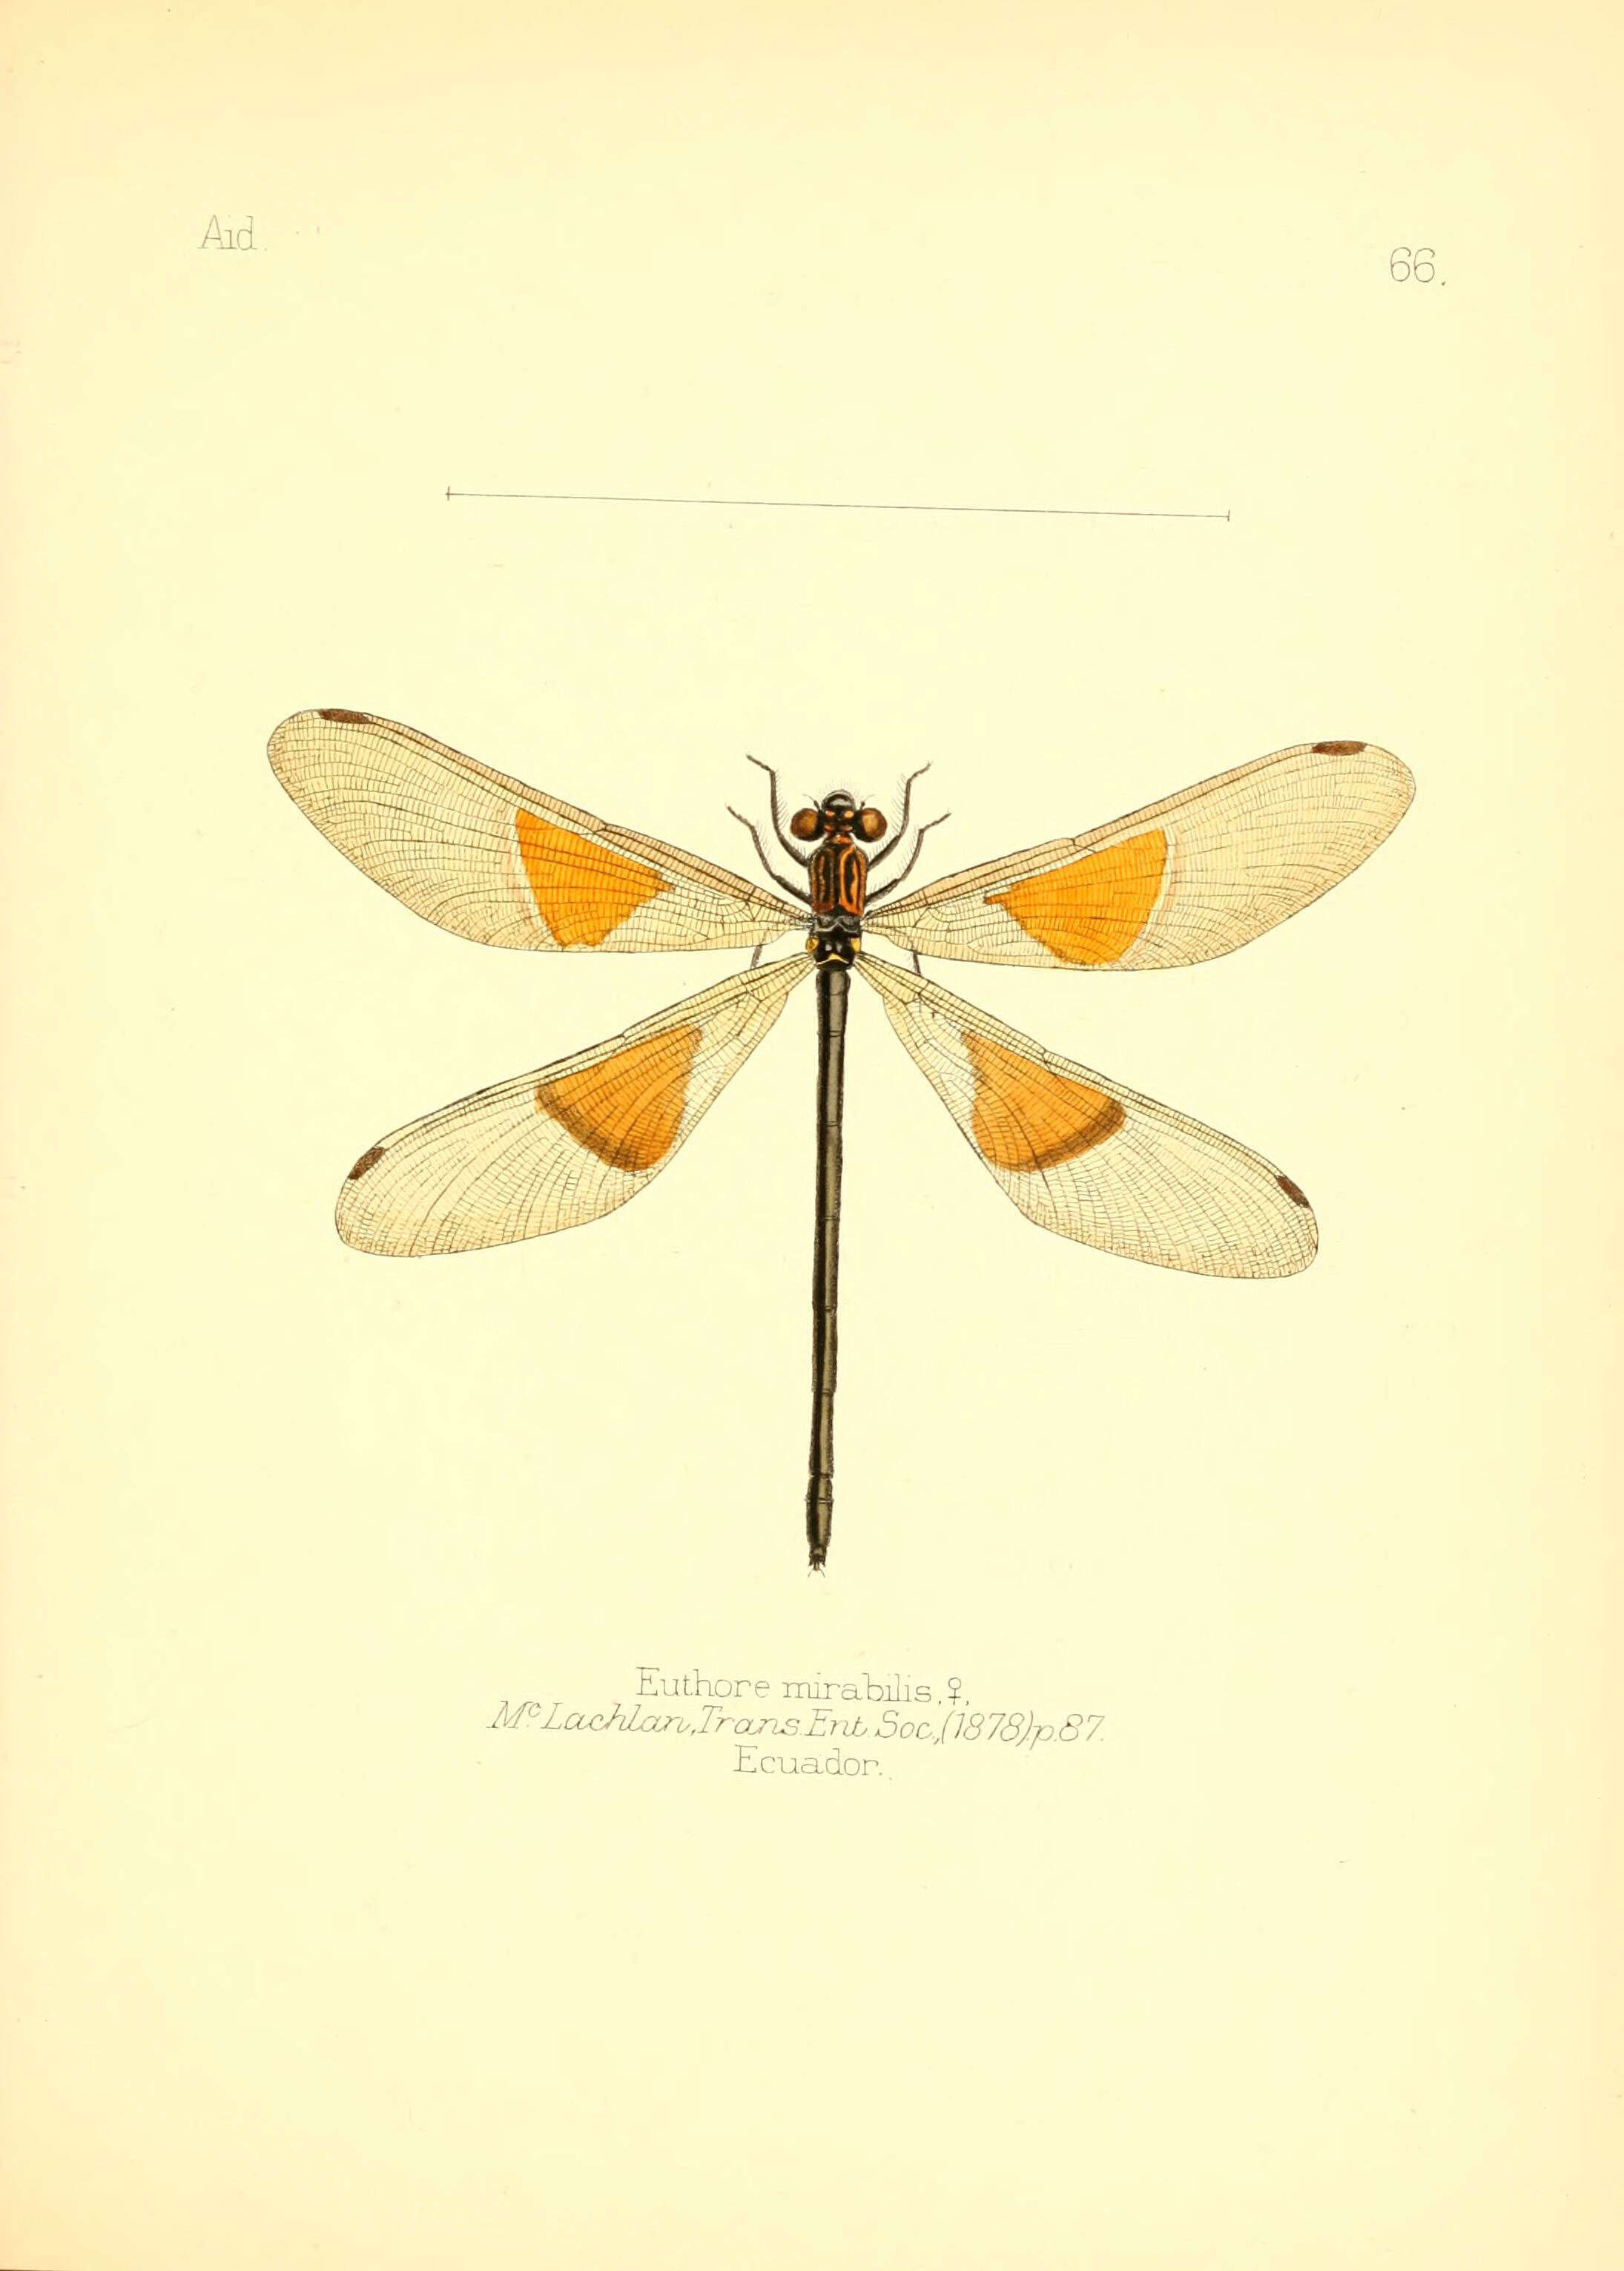 Image of Euthore mirabilis McLachlan 1878